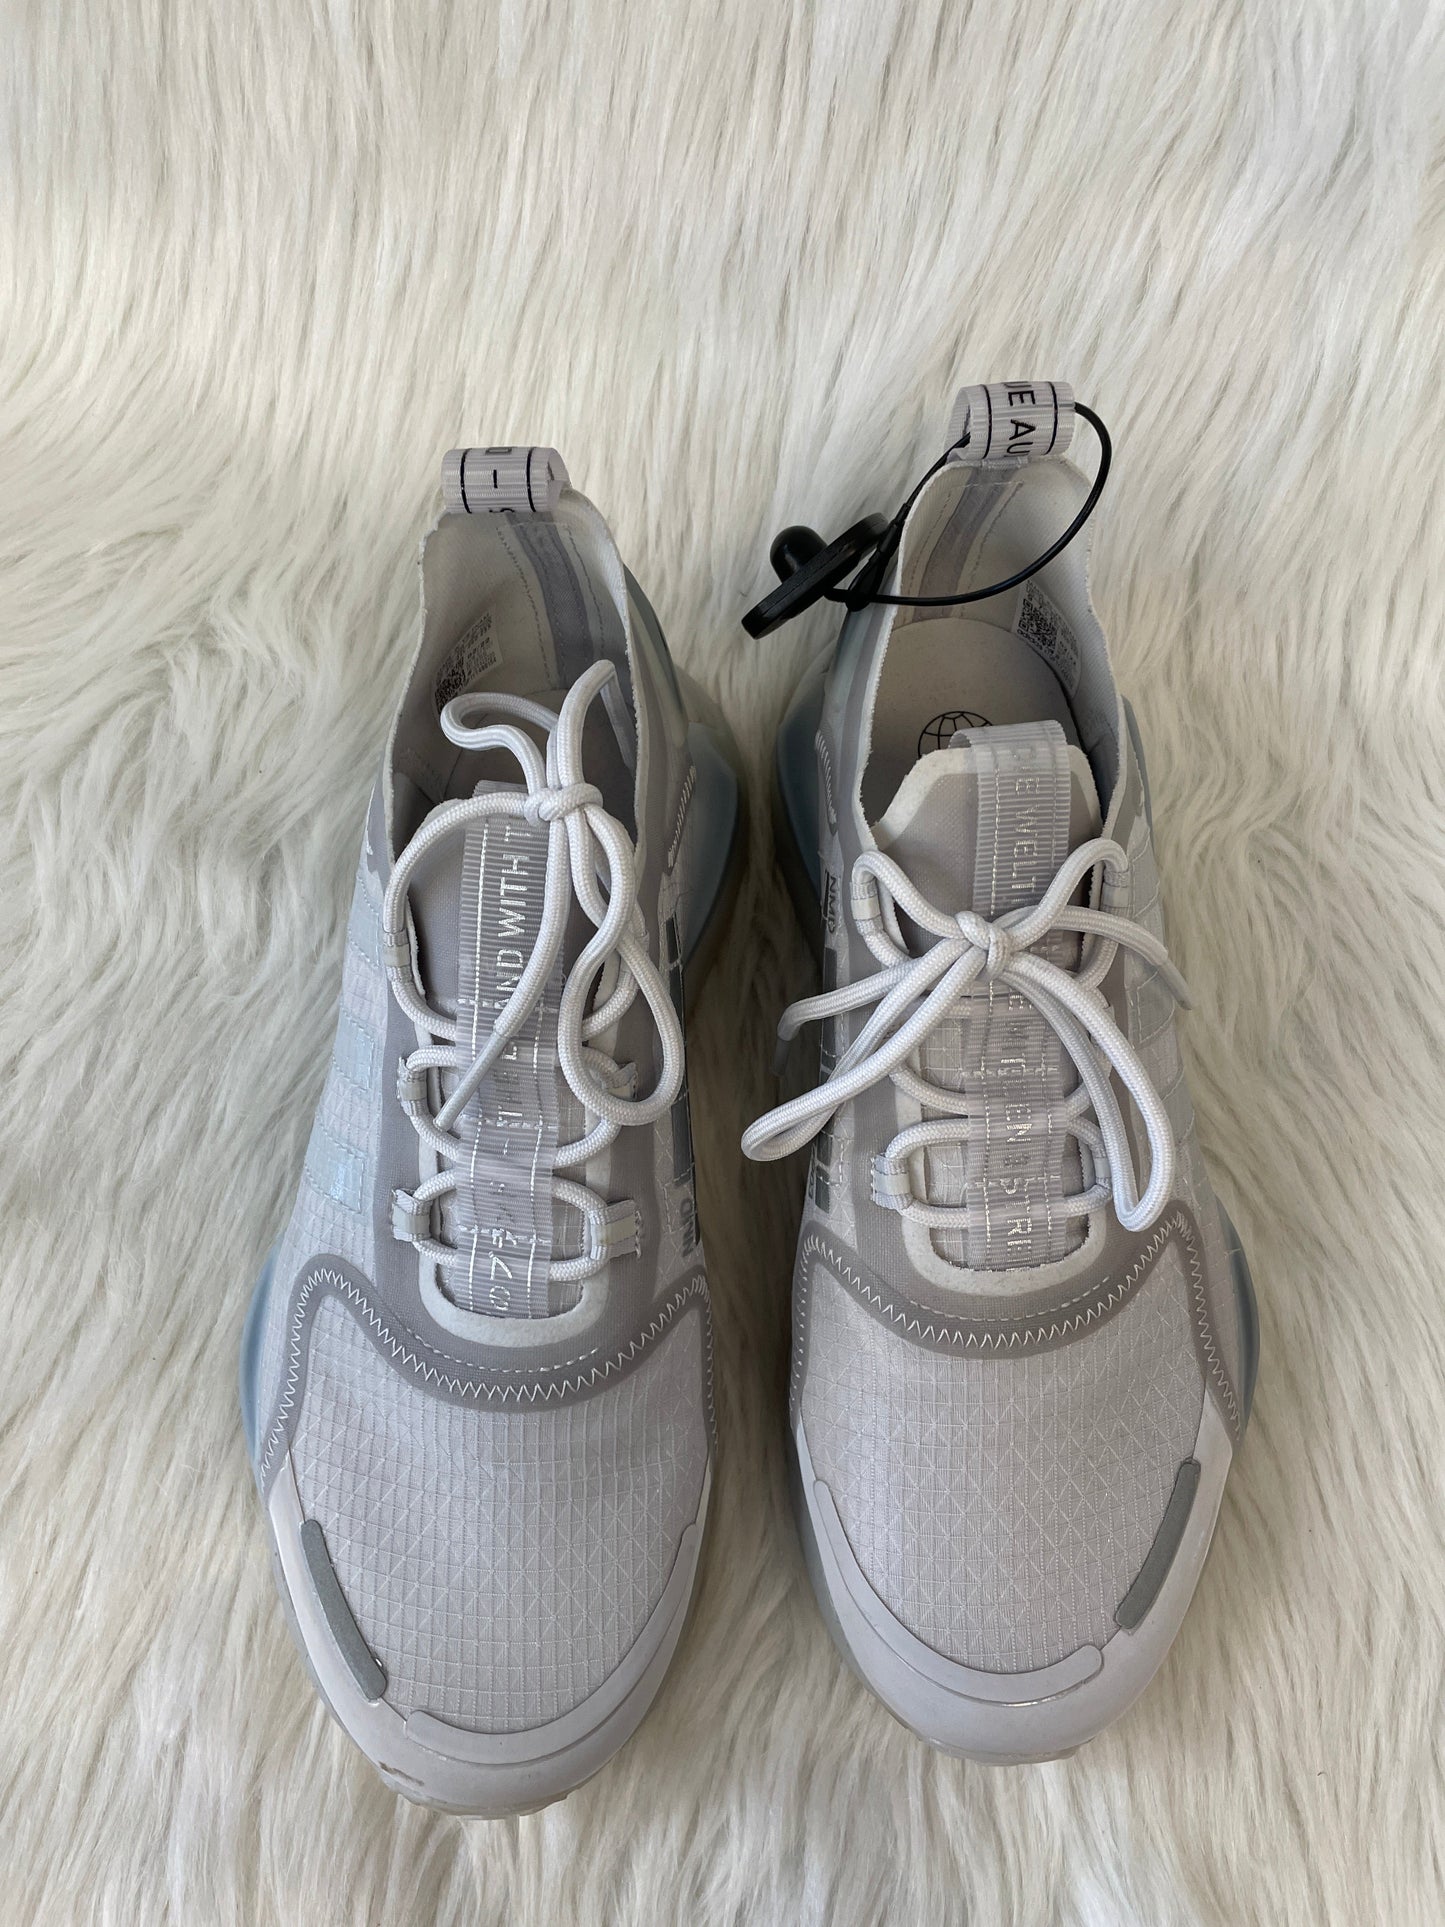 White Shoes Athletic Adidas, Size 9